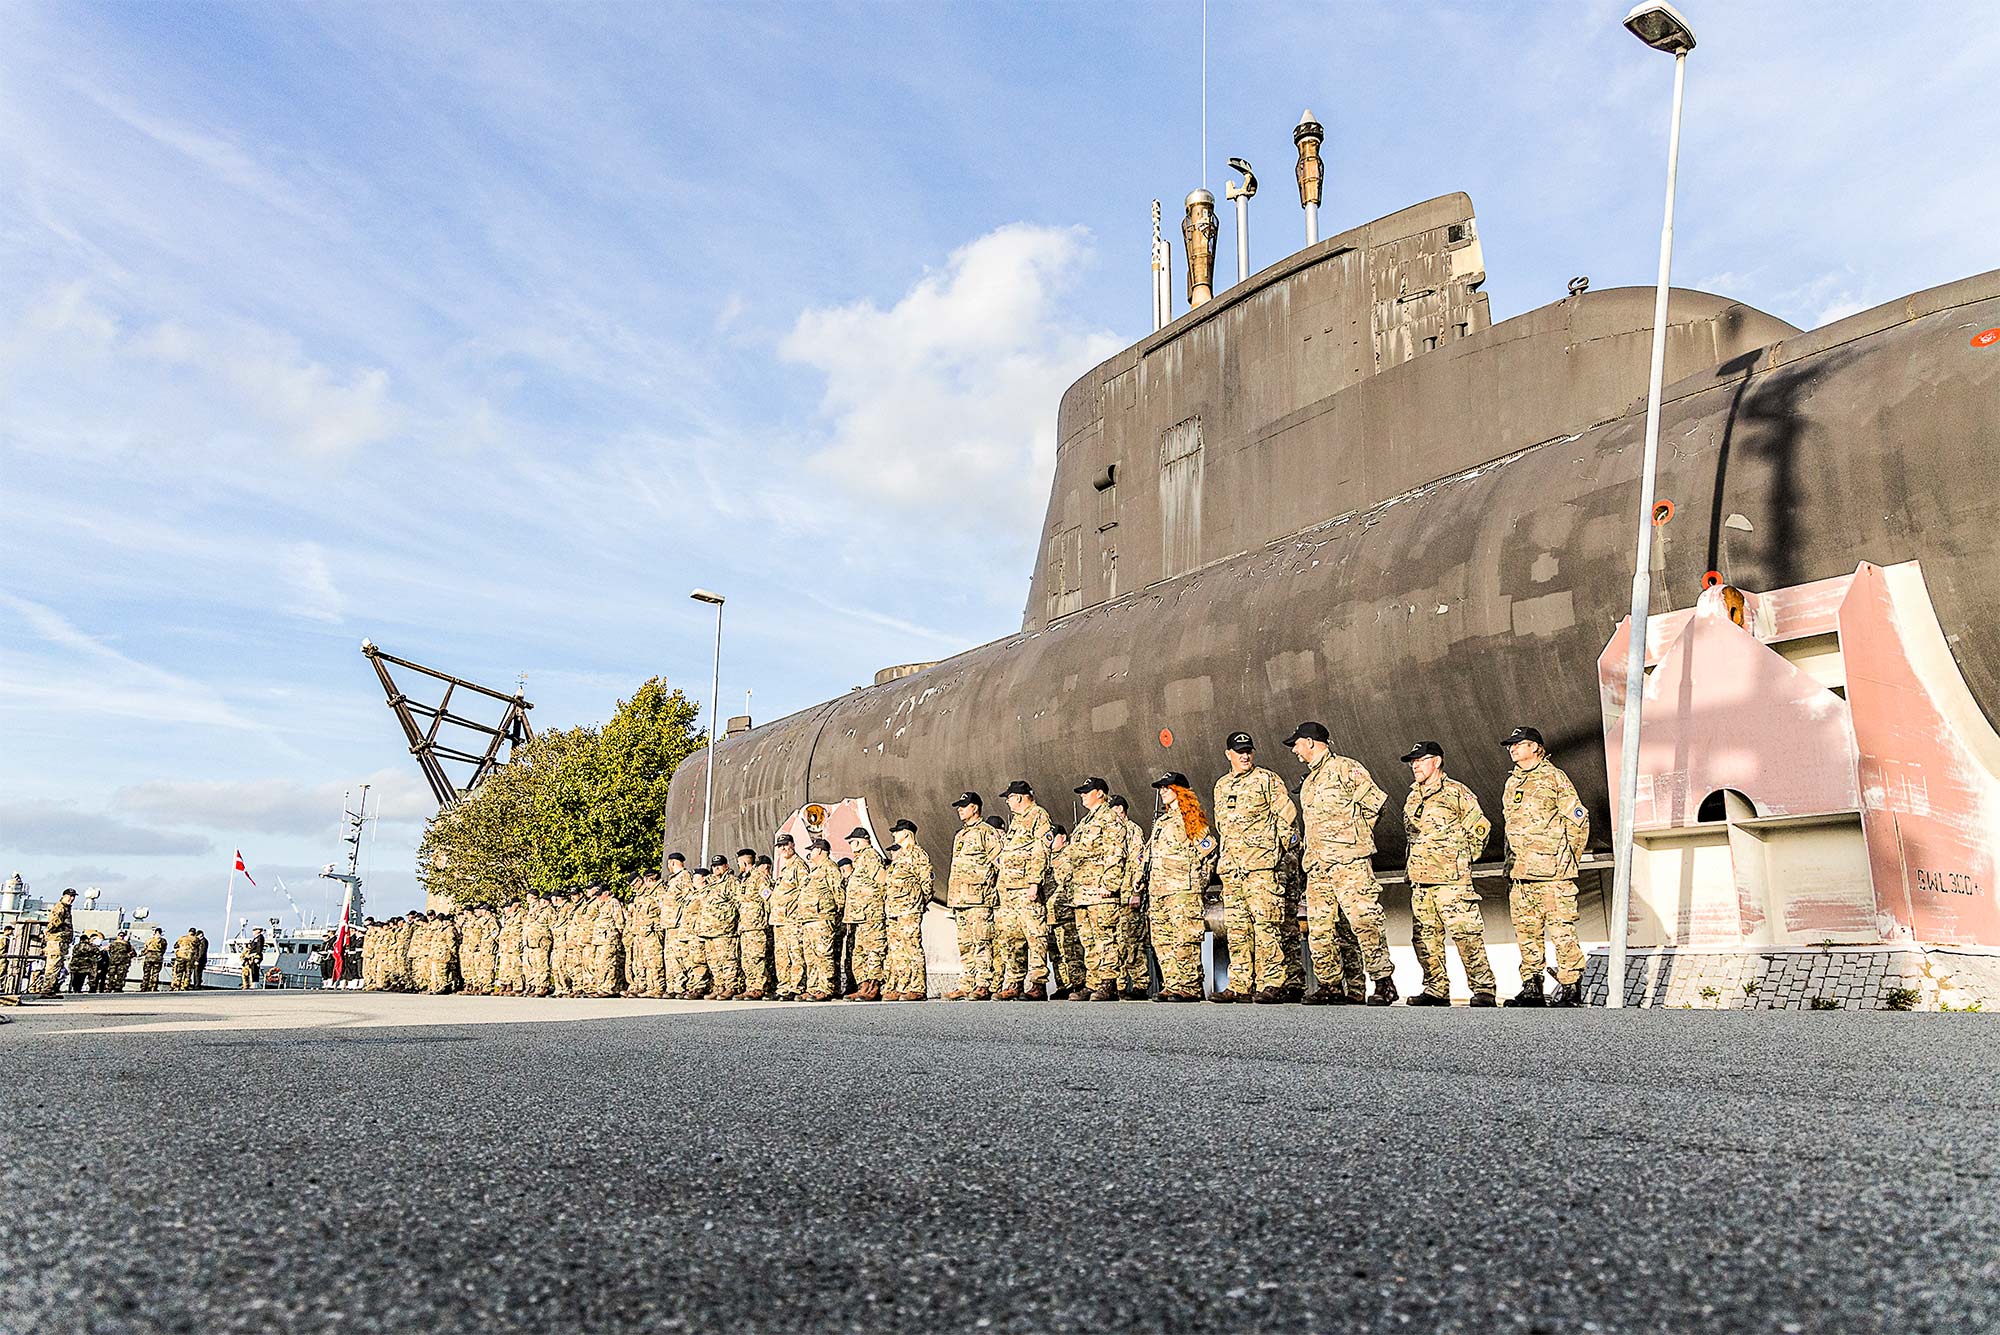 Frivillige marinere samlet til parade på Holmen foran museums-ubåden, Sælen, og den gamle mastekran og rigets flag bagerst. Foto: Andreas Birkebæk.